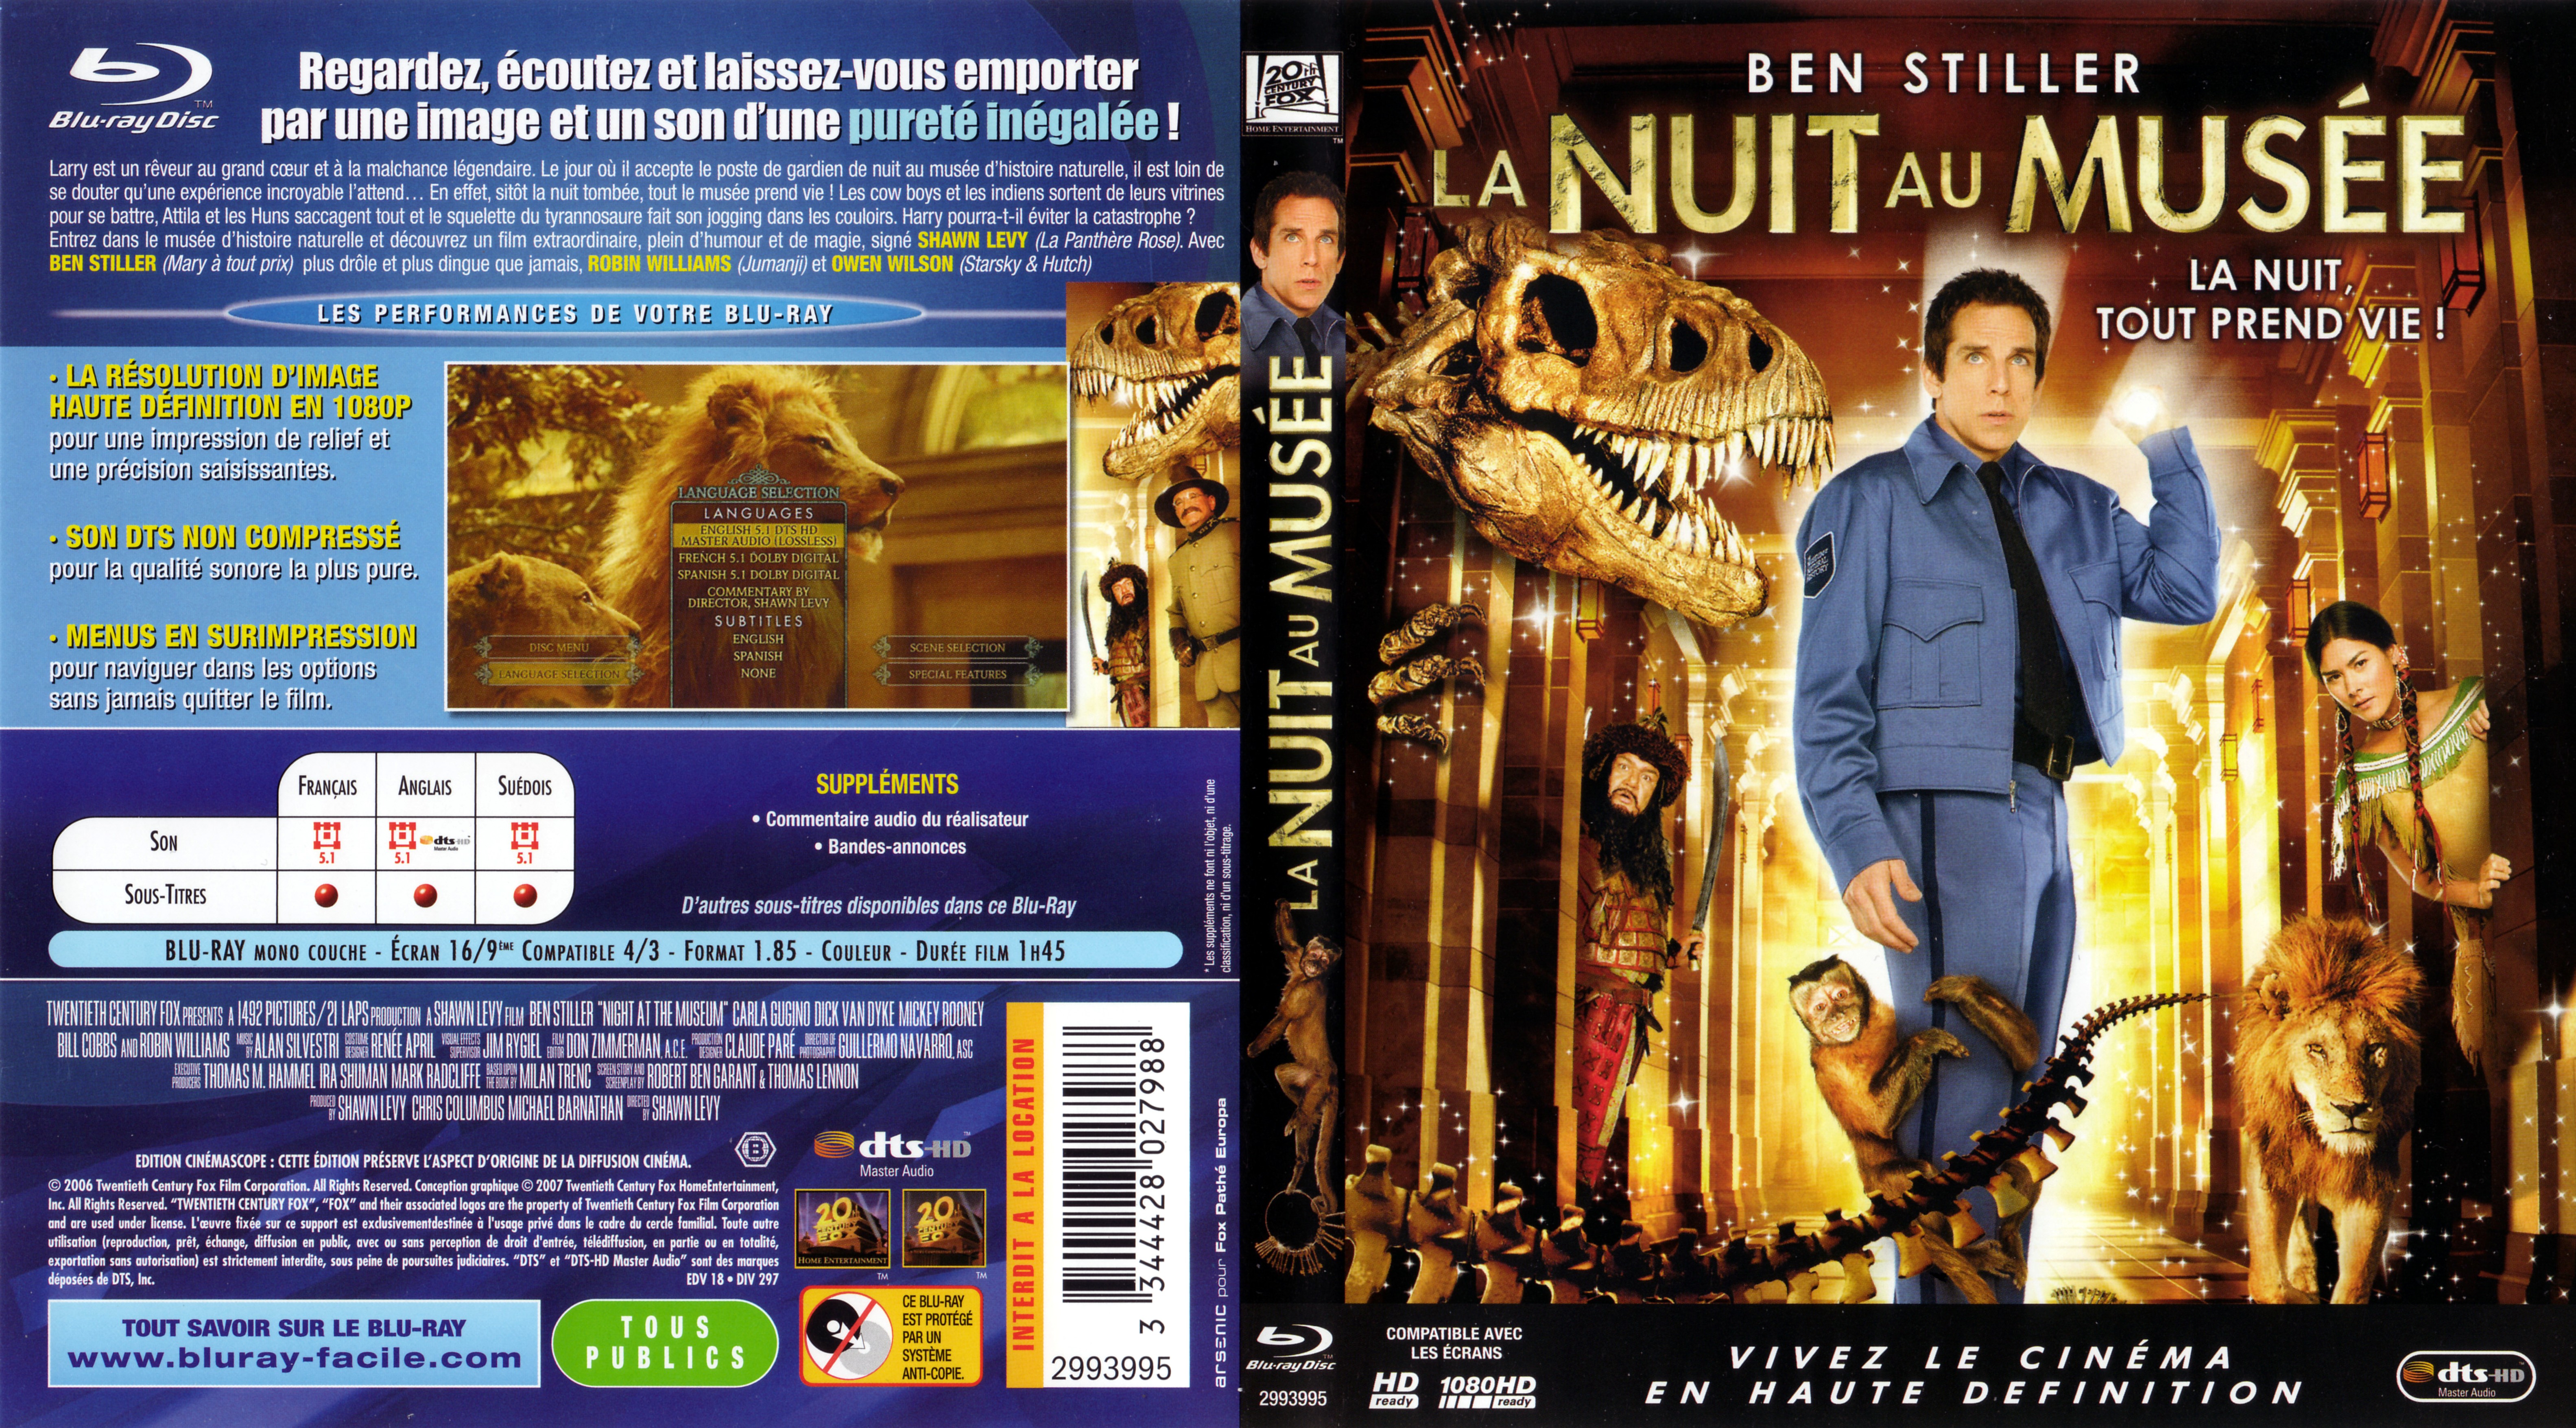 Jaquette DVD La nuit au muse (BLU-RAY)